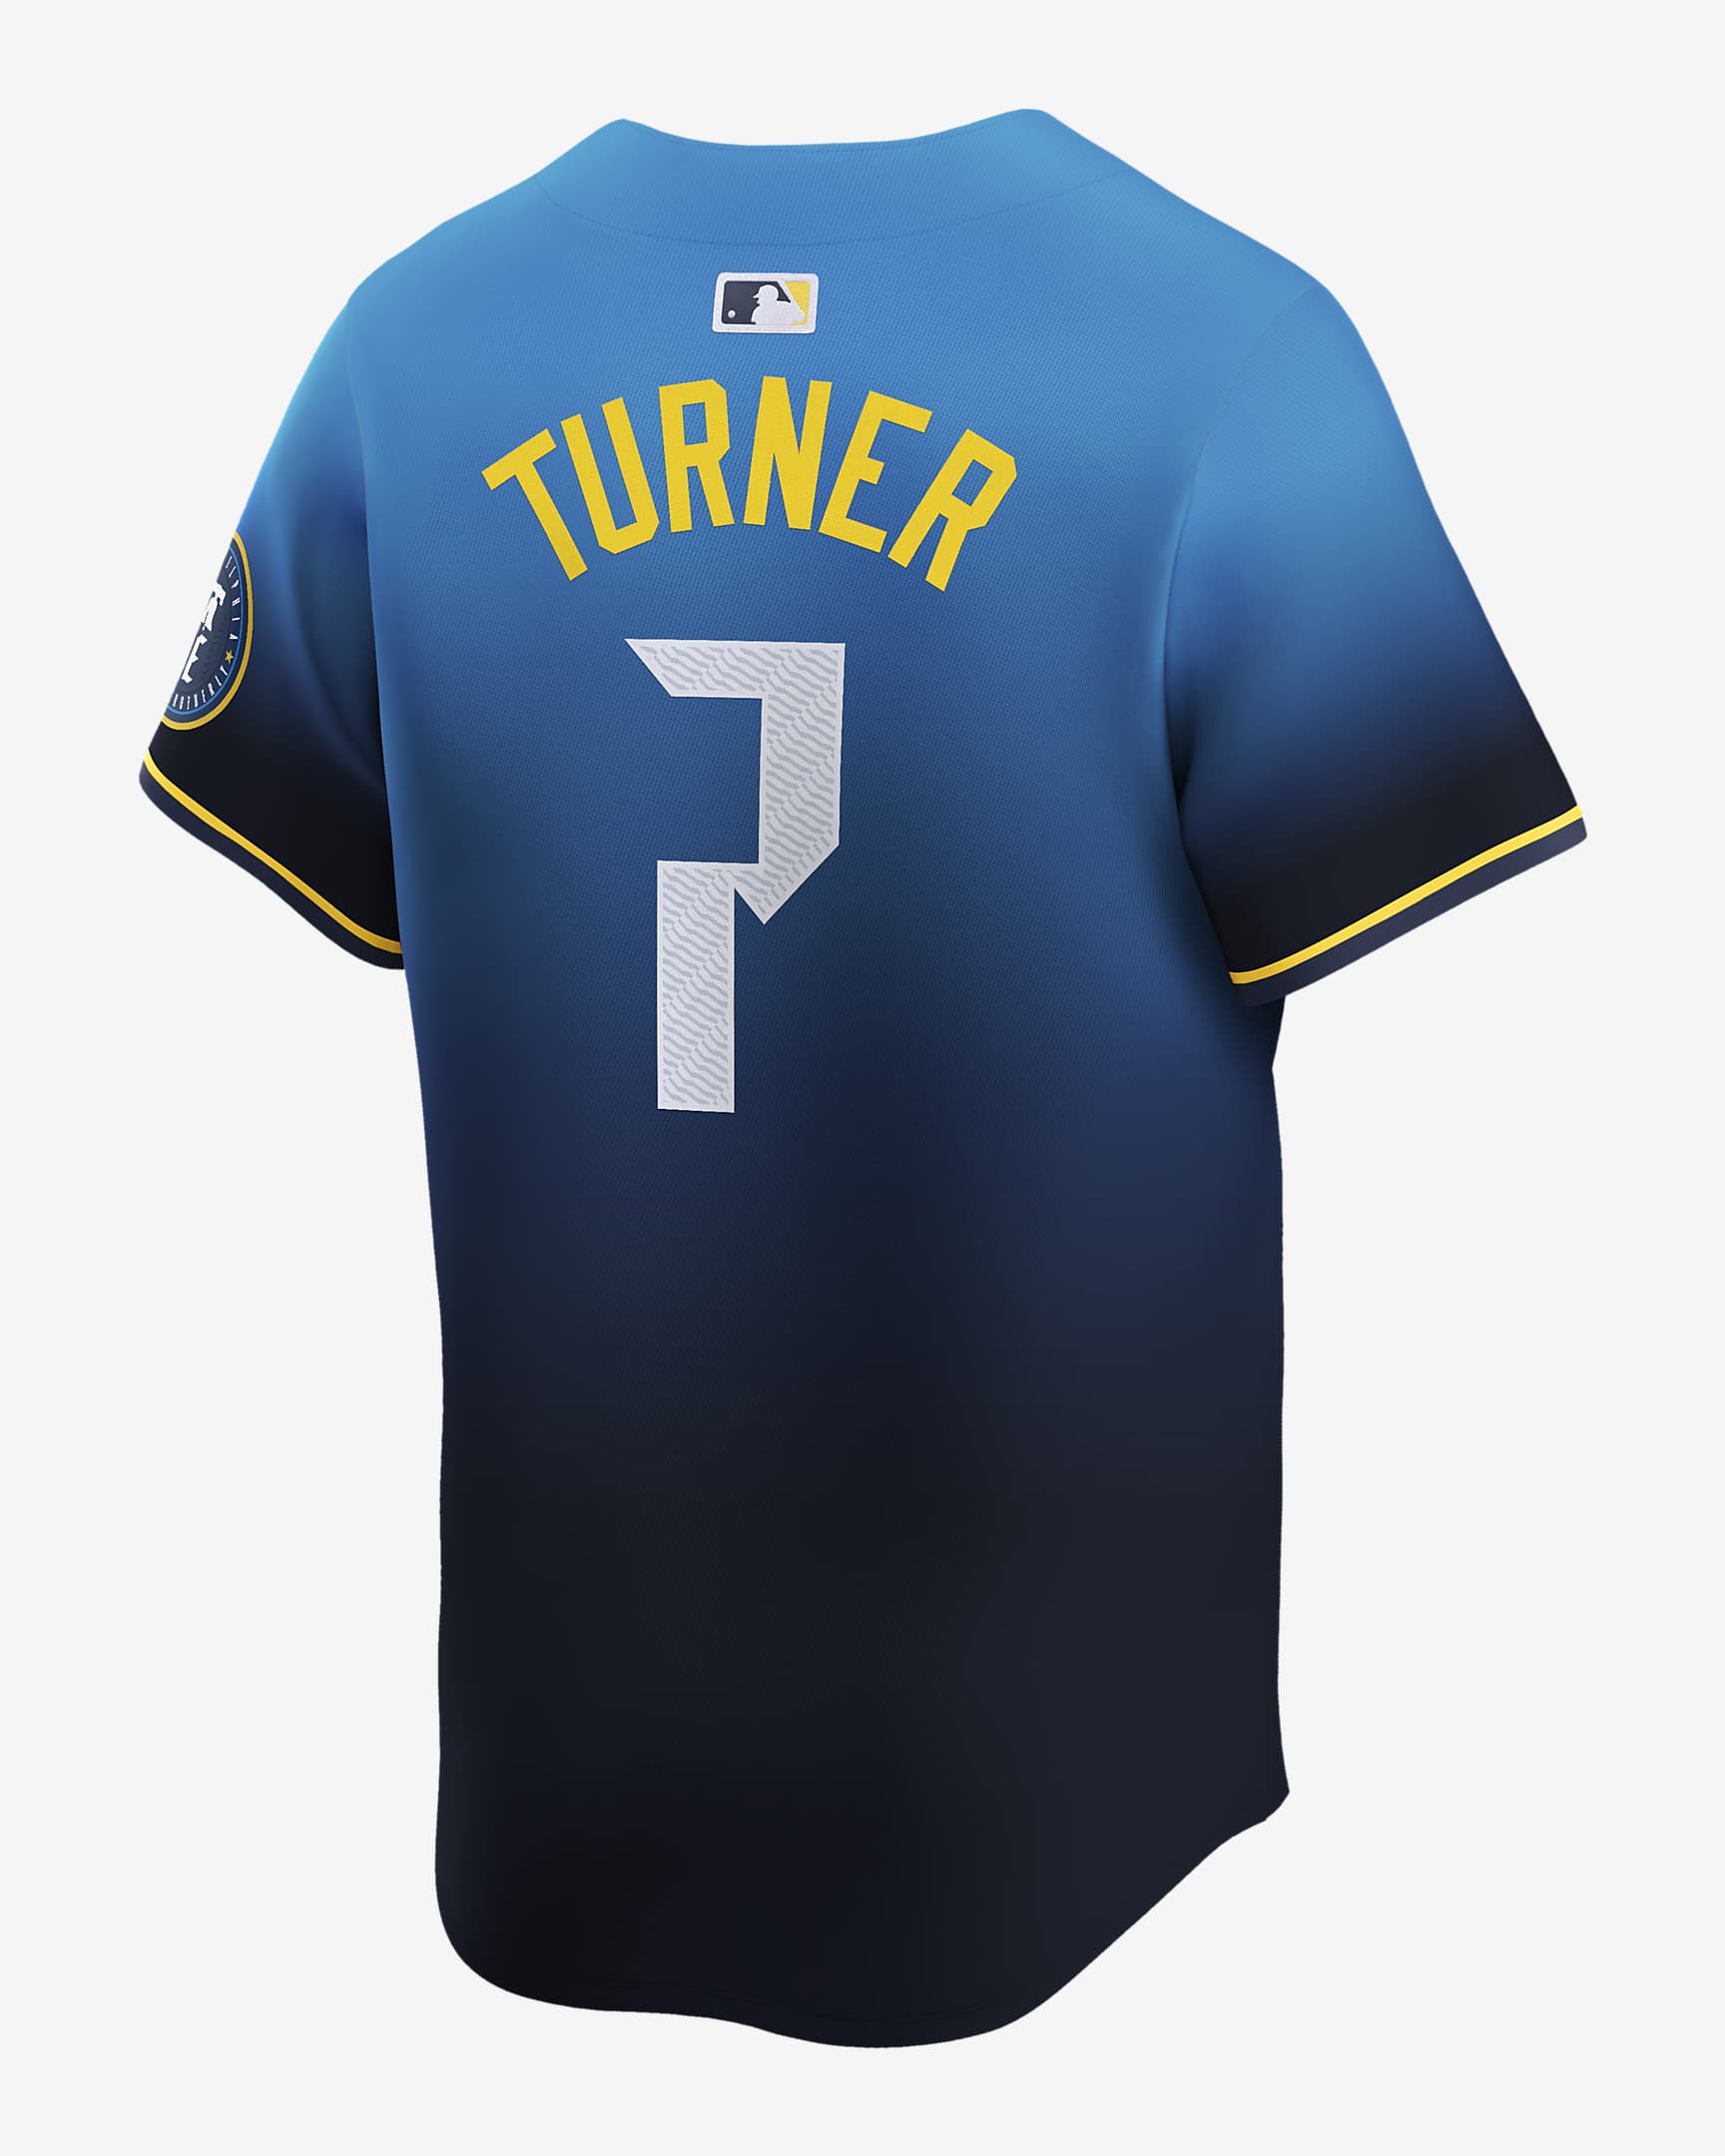 Trea Turner Philadelphia Phillies City Connect Men's Nike DriFIT ADV